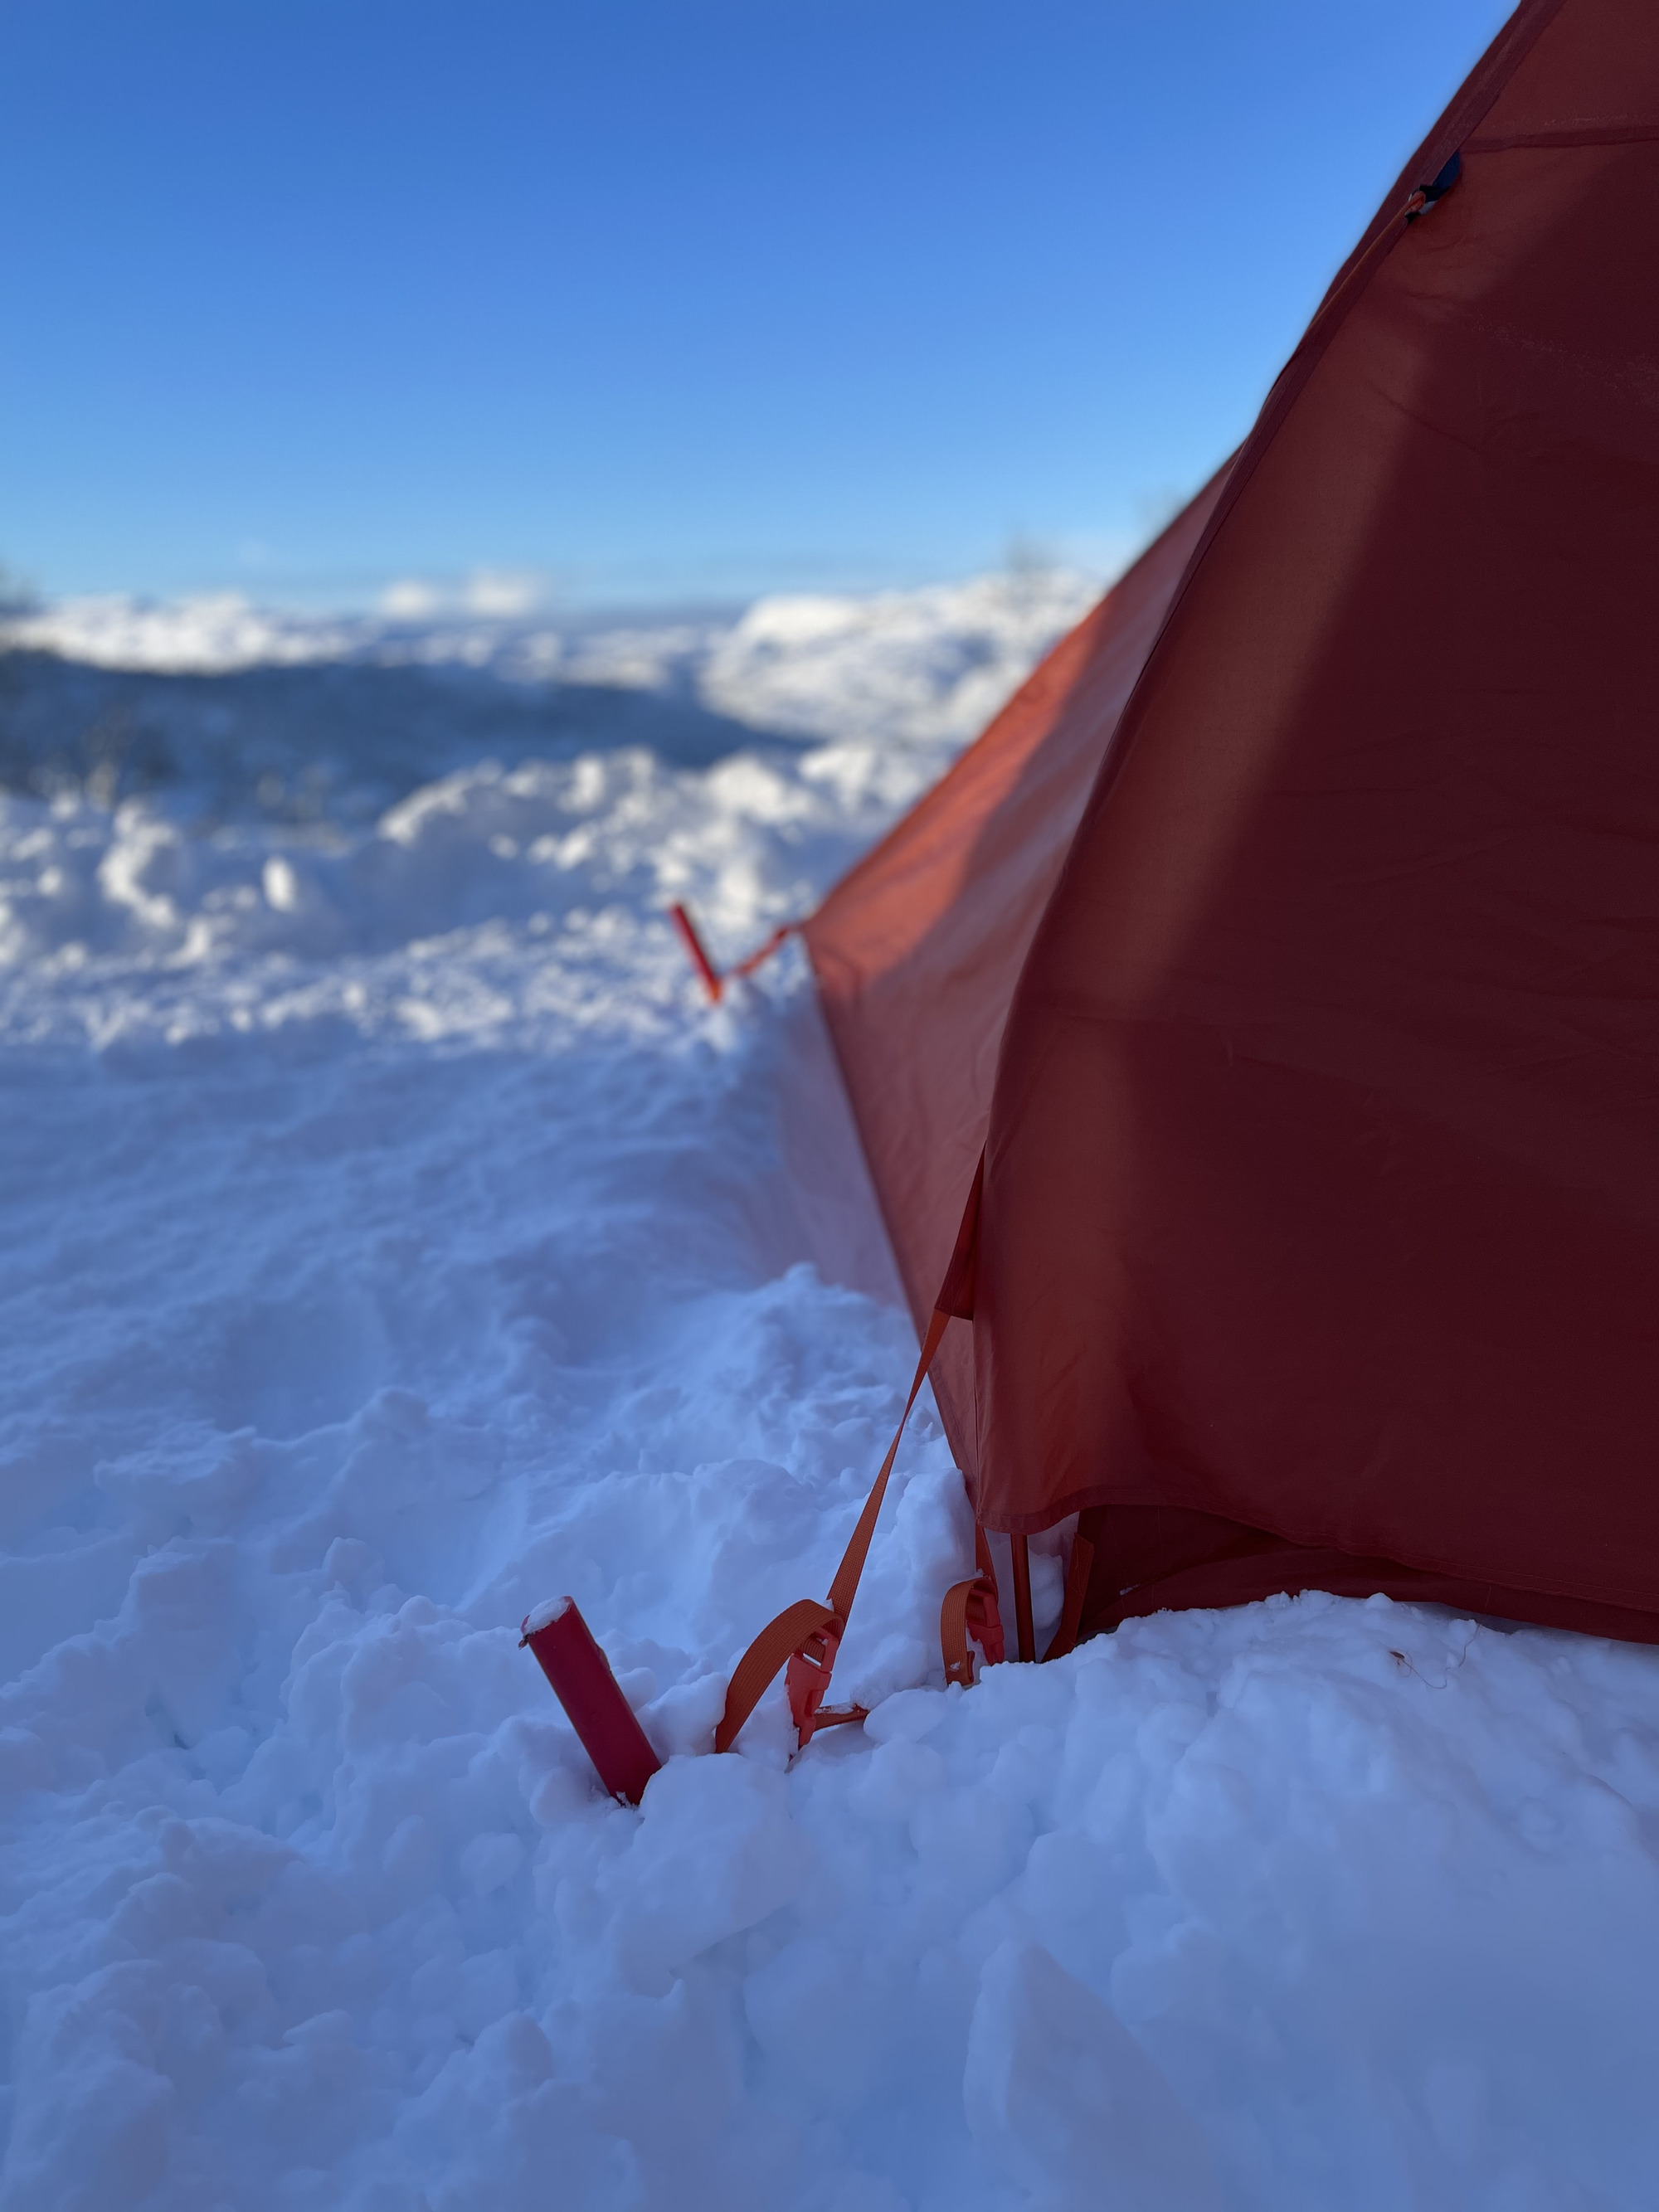 Brøytestikker som teltpluggar på vinteren.
Foto: Gina Wigestrand 